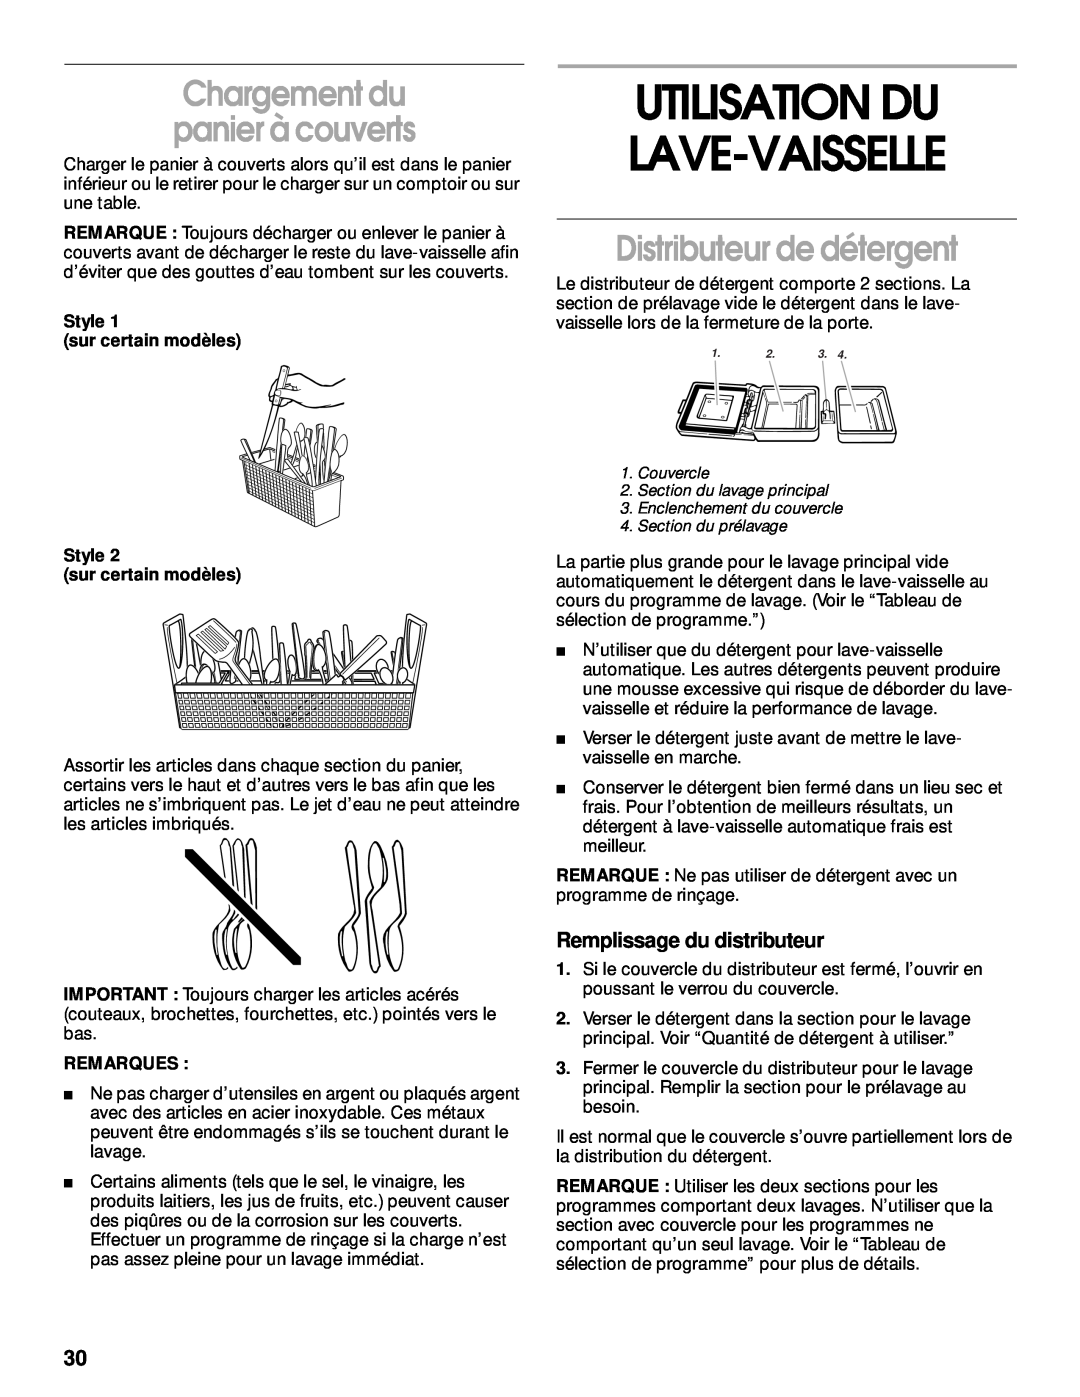 Whirlpool TUD5700, TUD400 manual Utilisation Du Lave-Vaisselle, Distributeur de détergent, Chargement du panier à couverts 